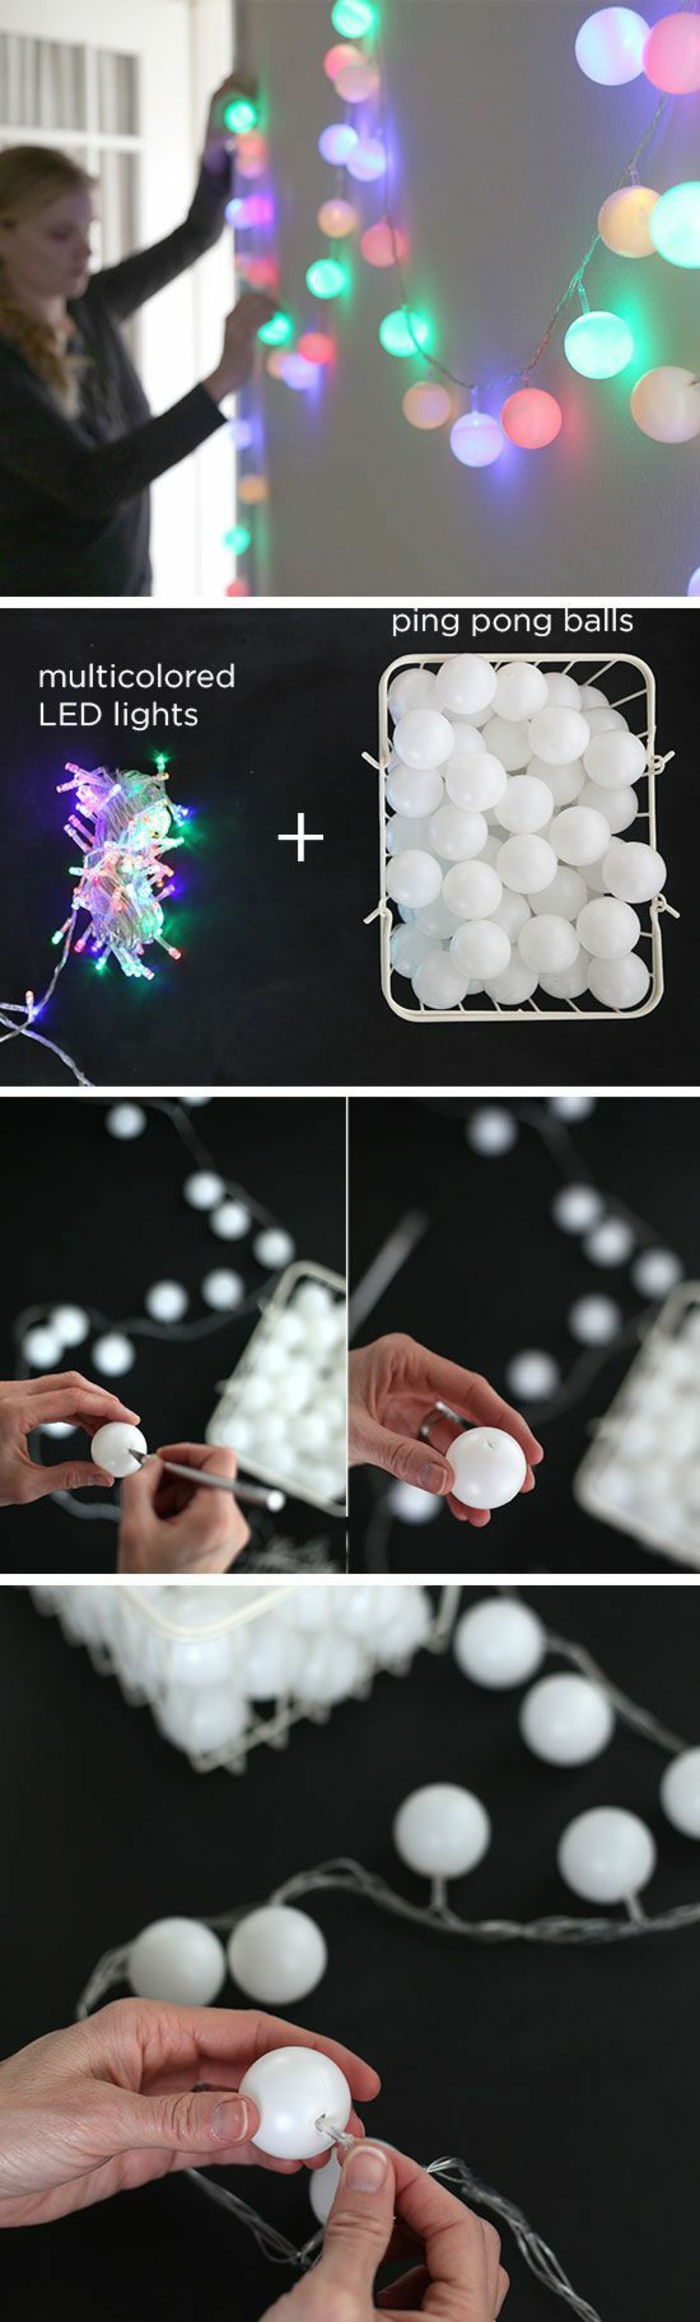 gör väggdekoration själv, lampor, små vita plastbollar